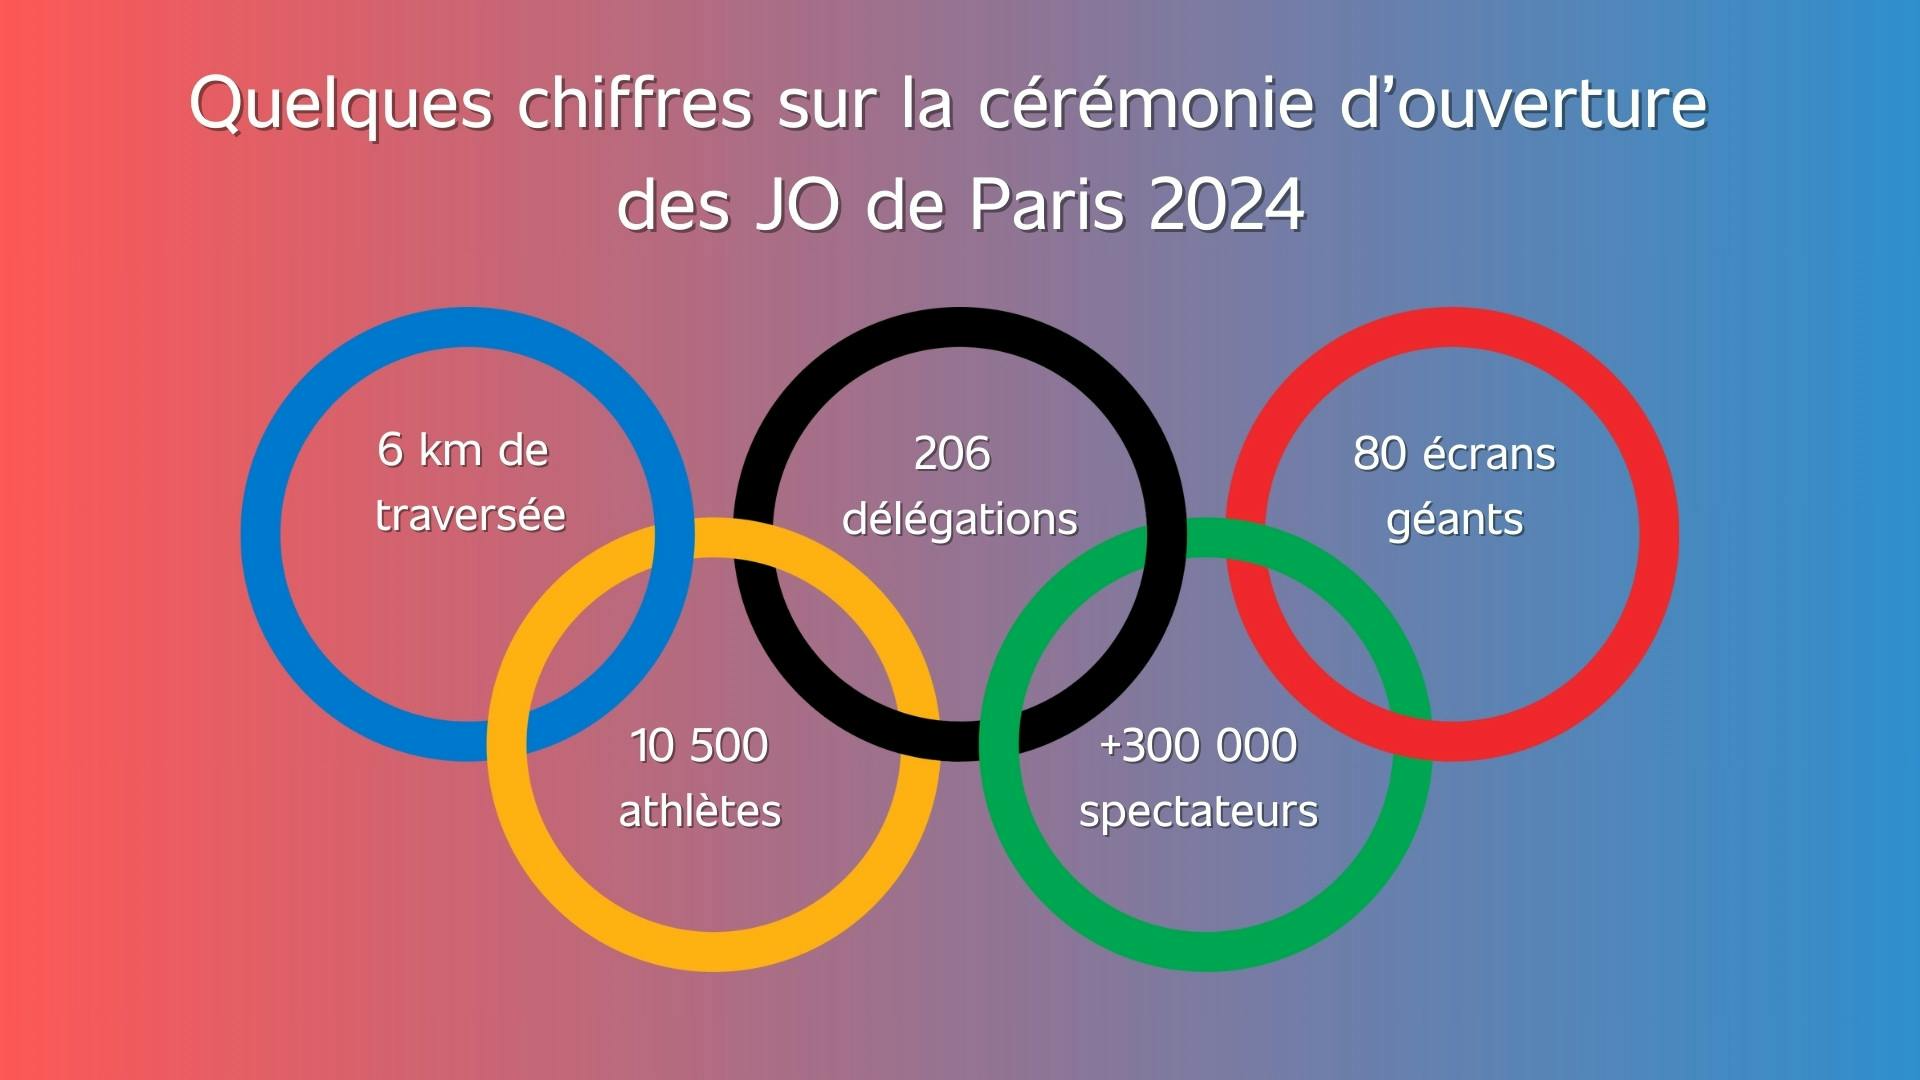 image des anneaux des Jeux olympiques avec les chiffres clé de la cérémonie d’ouverture des JO de Paris 2024